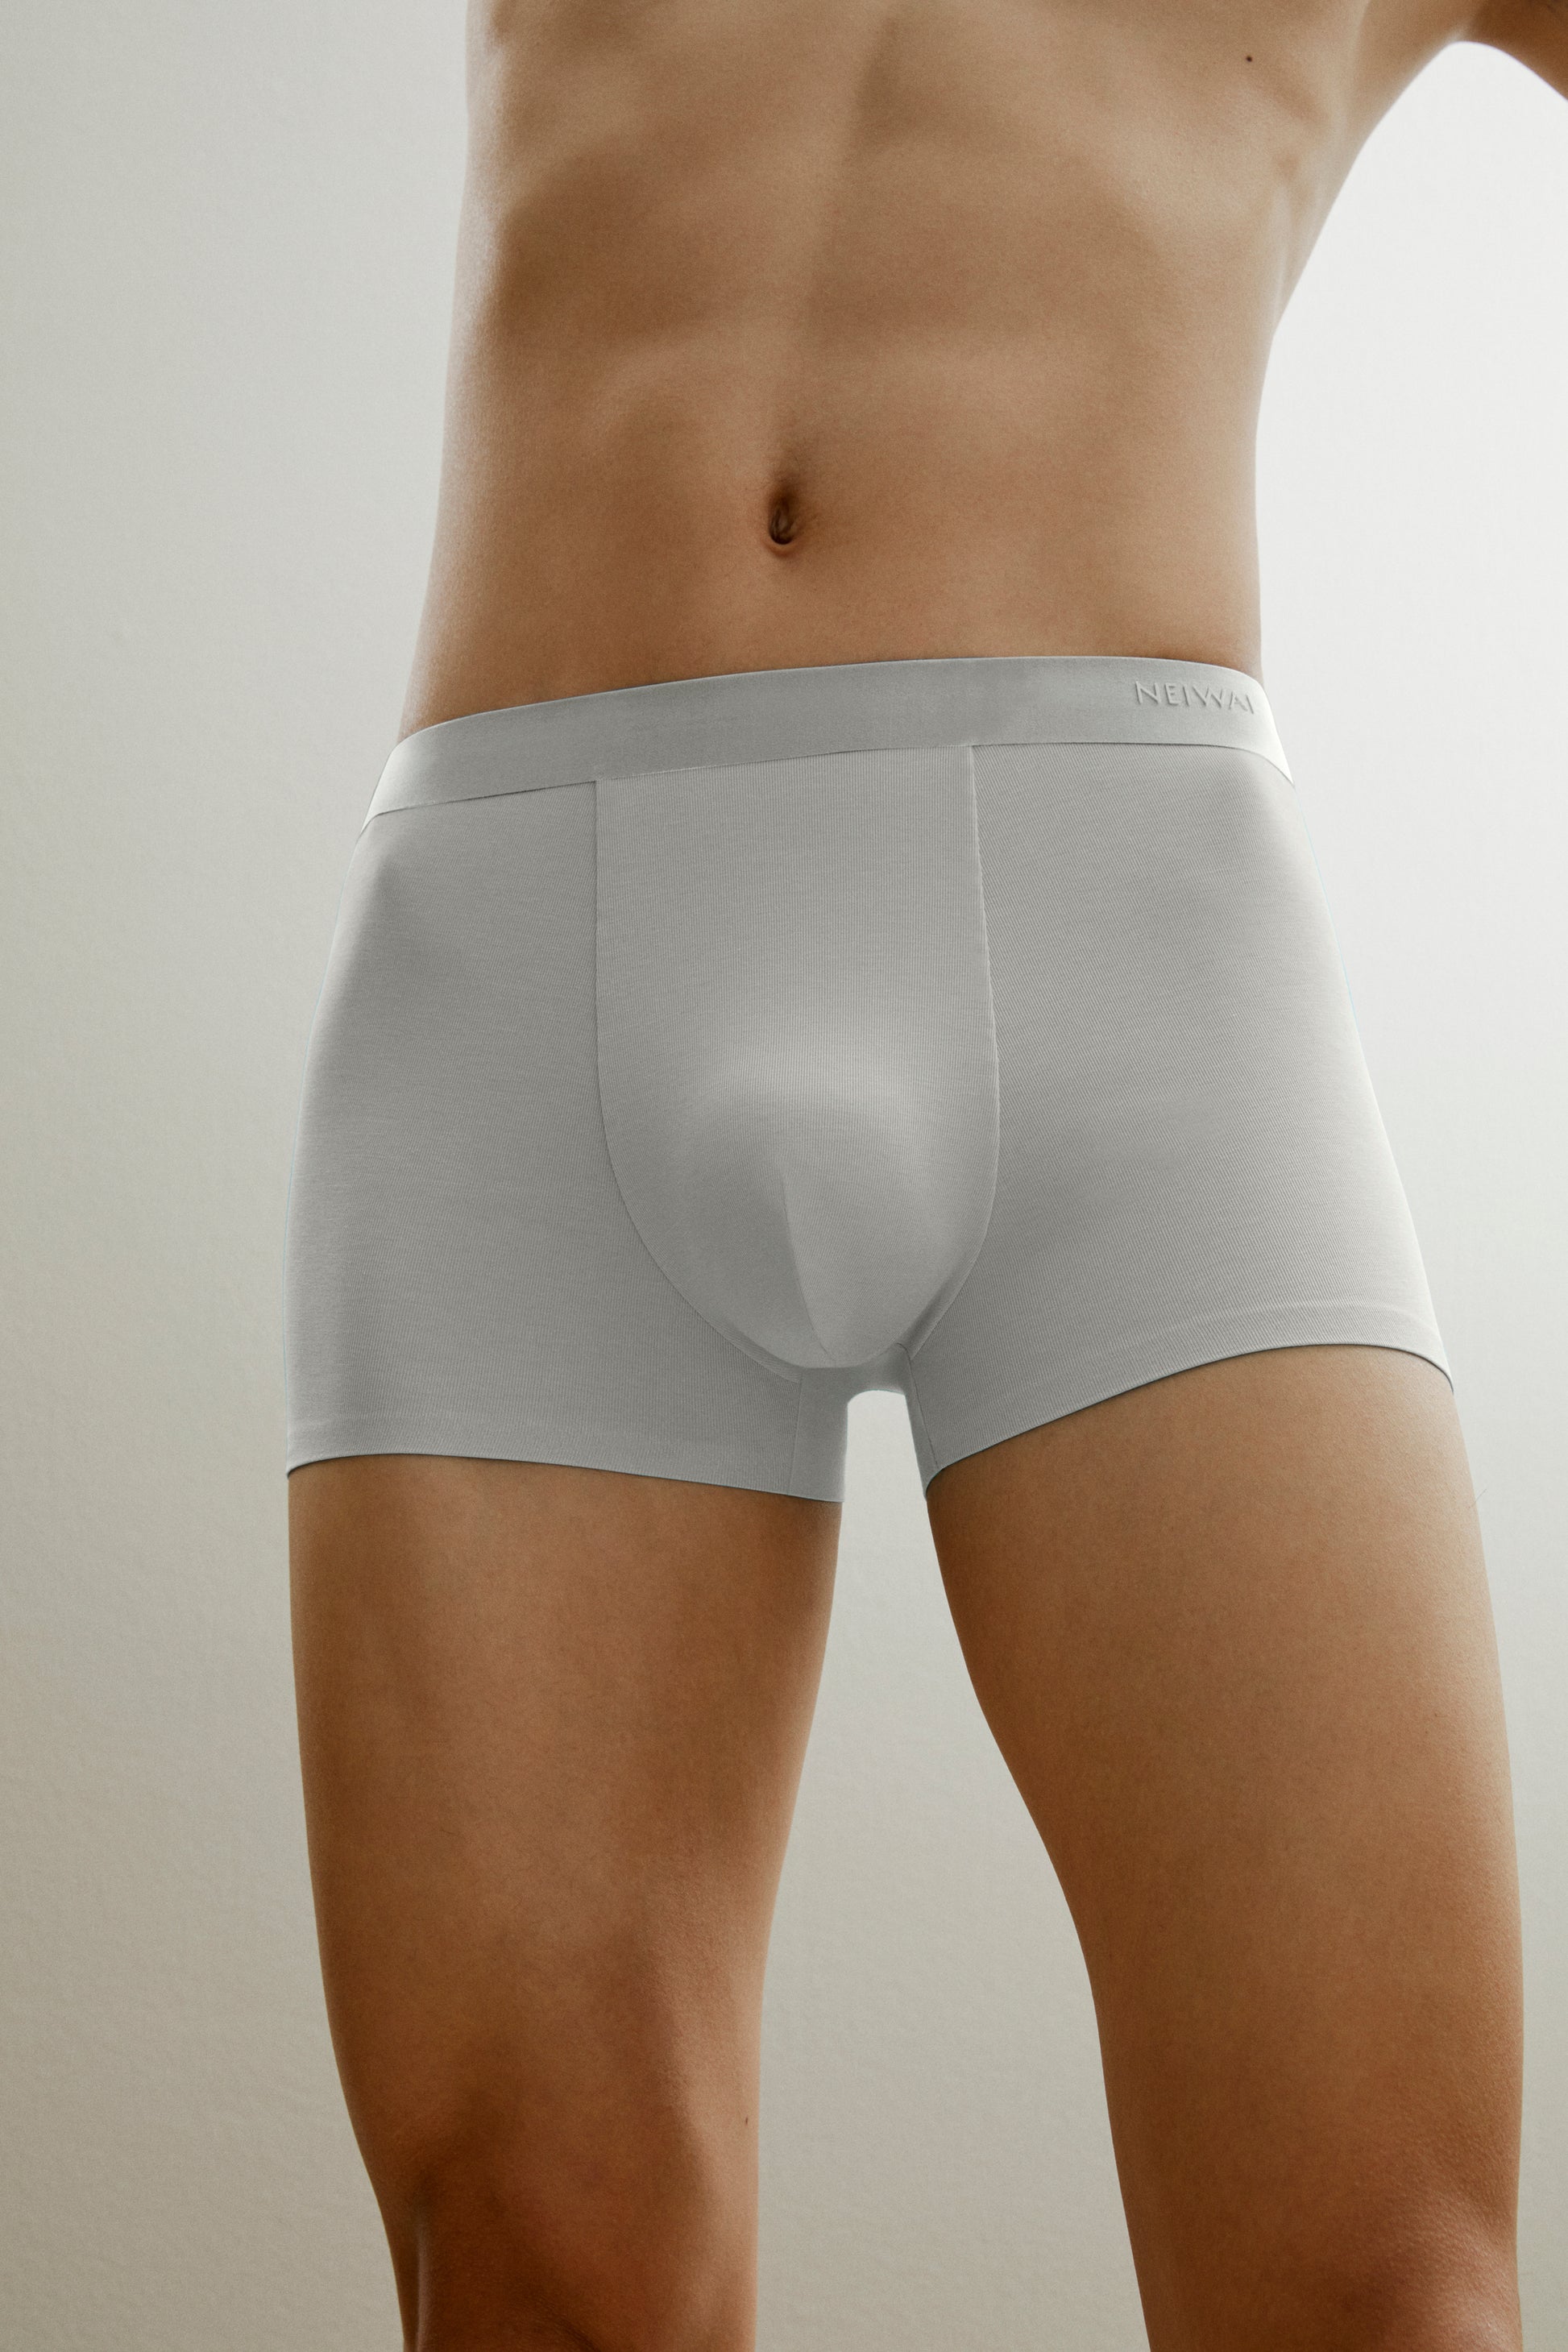 Soft mens strapless underwear For Comfort 